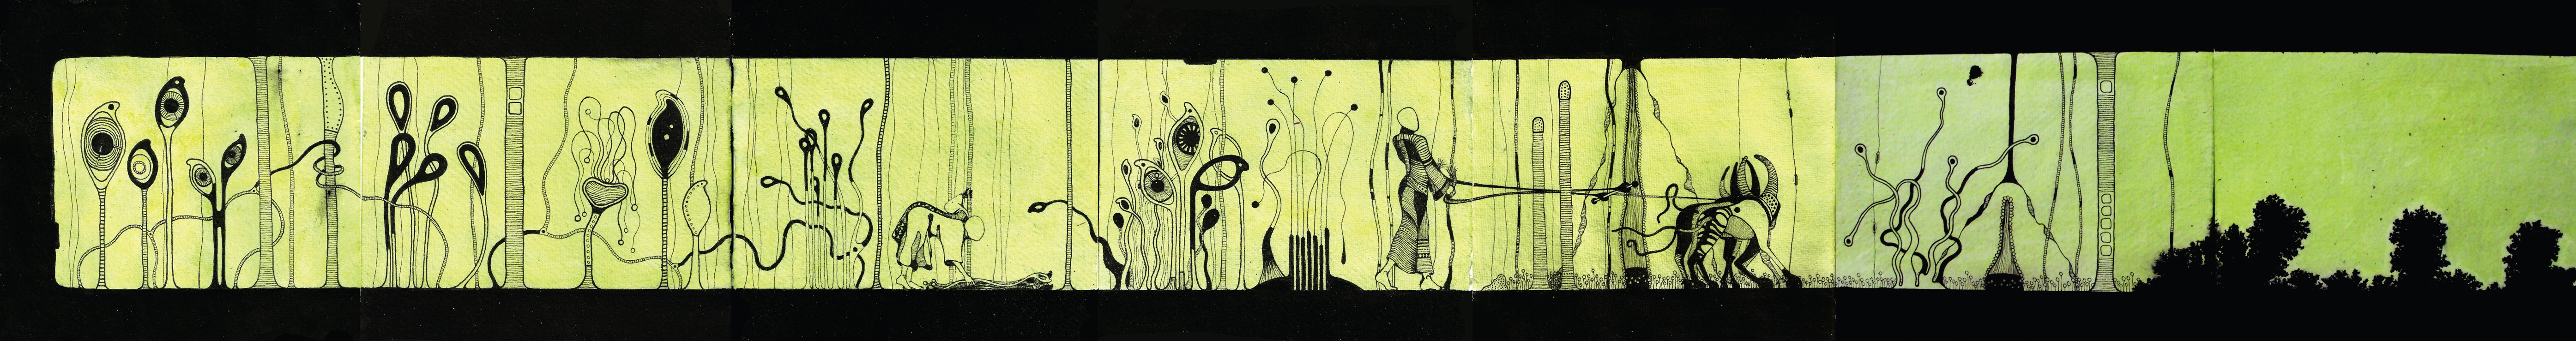 The Eye Garden - Harvest Scene | Pigment ink on handmade cotton rag paper | 15 x 110 cm | 2012